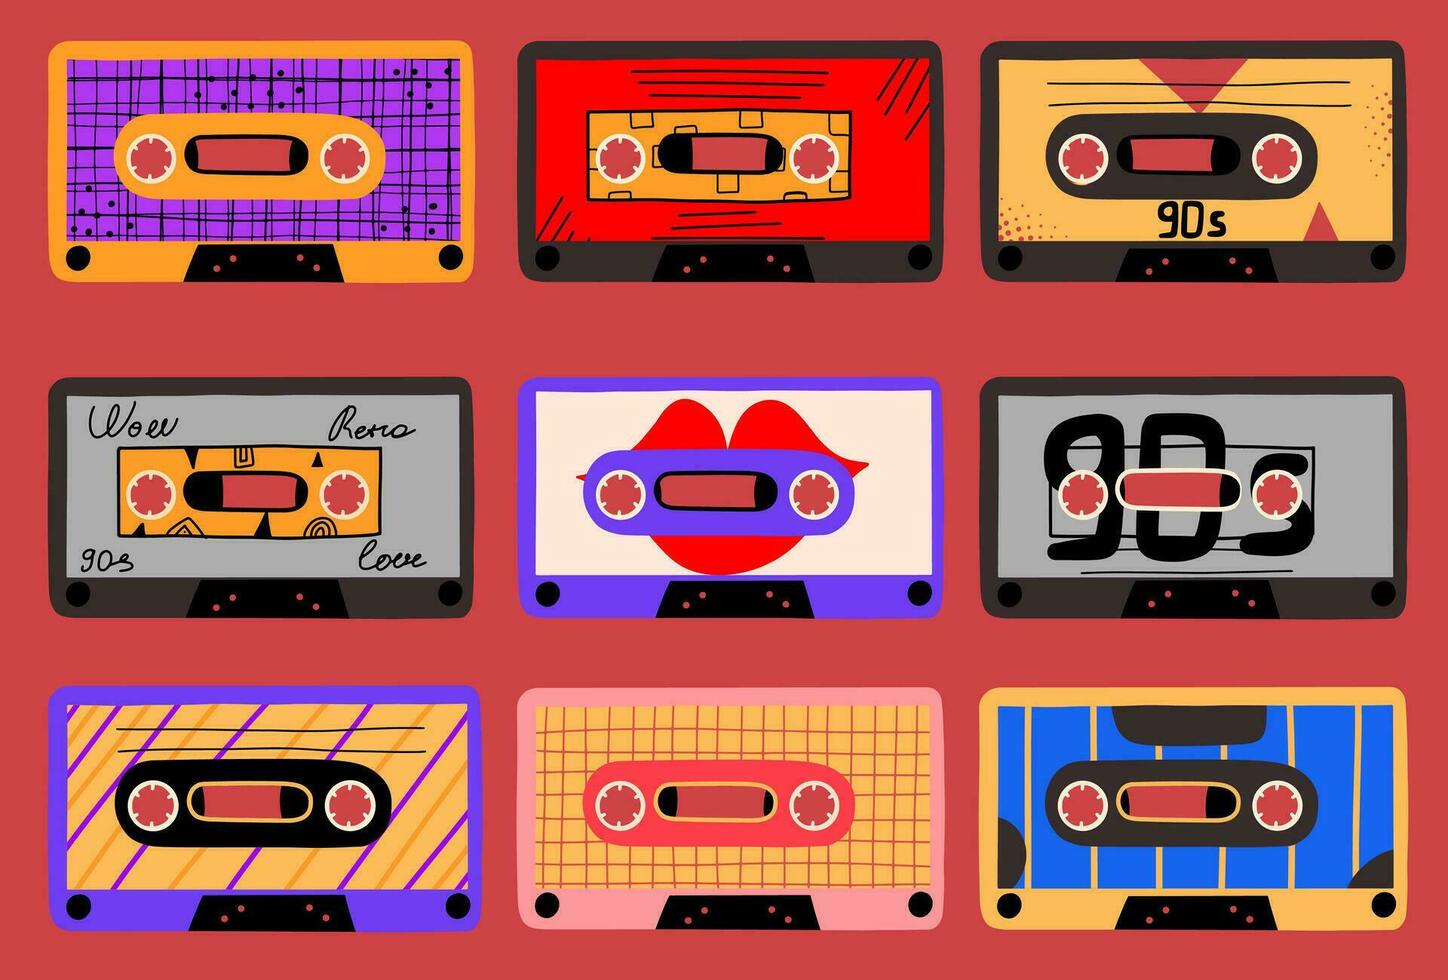 uppsättning av retro design audio kassetter. samling av element 1990-talet, 1980-talet. årgång klistermärken, ikoner. vektor illustration i platt stil